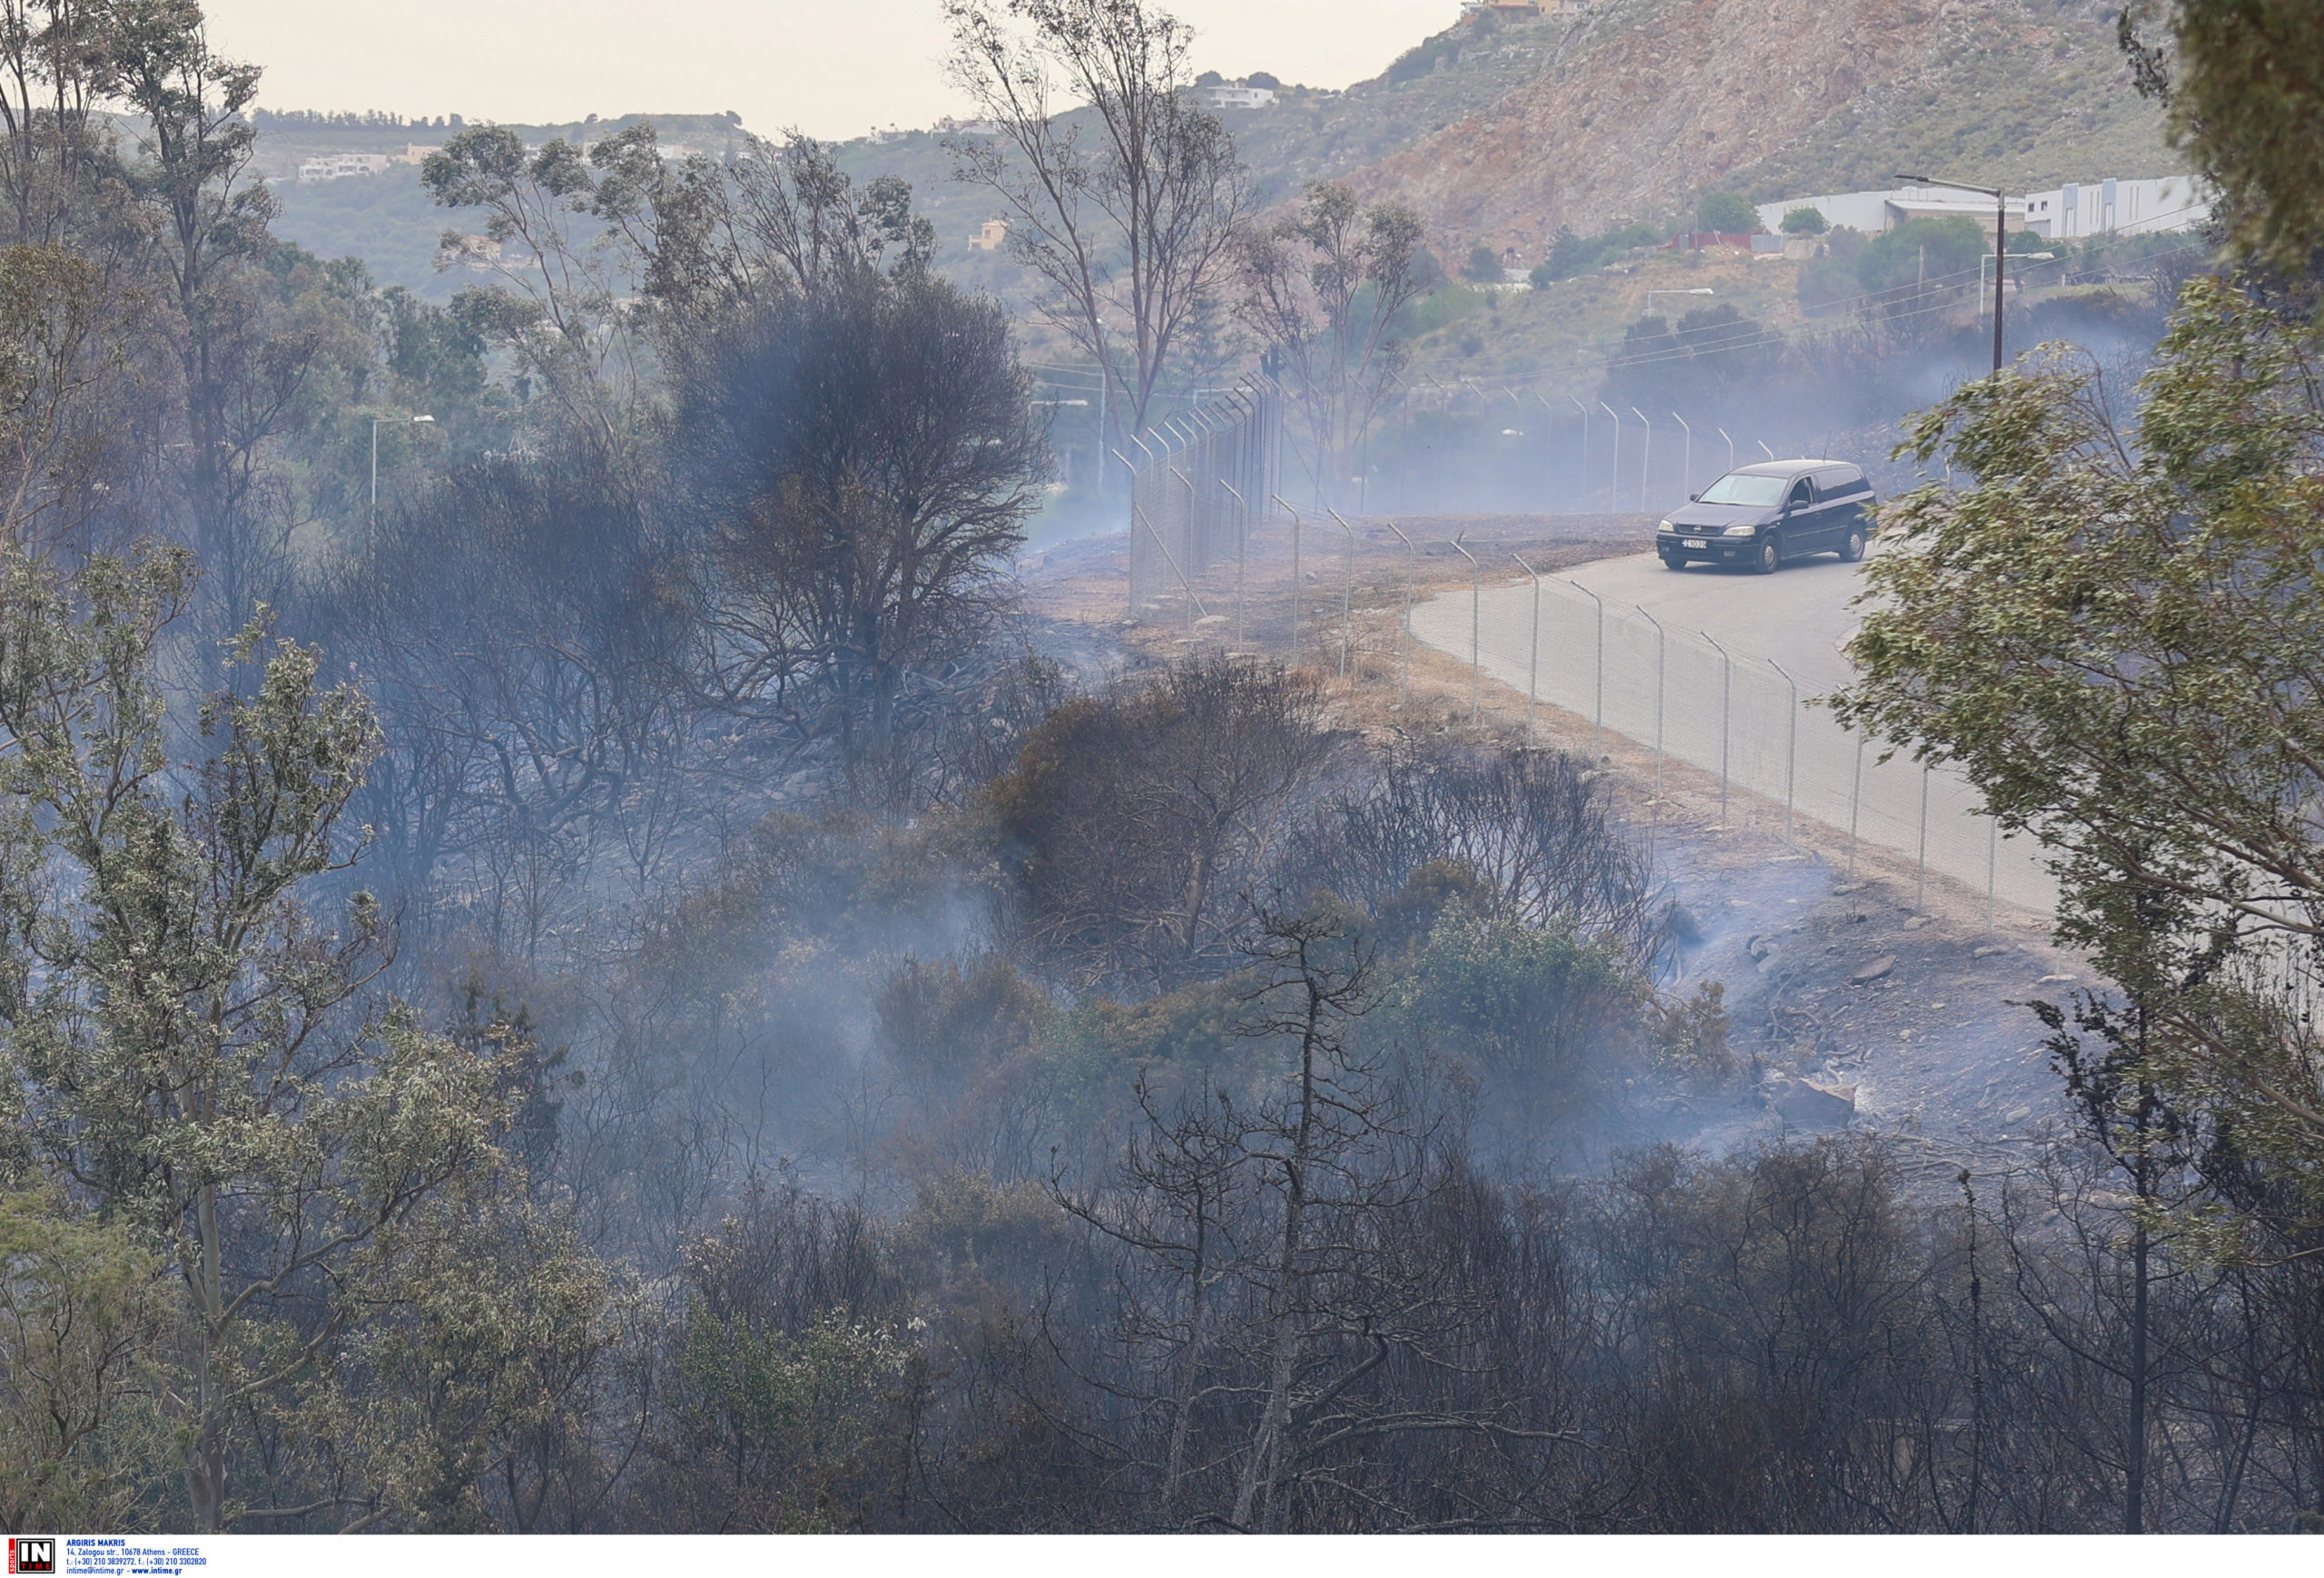 χανιά: νέες εικόνες από τη μεγάλη φωτιά κοντά στον ναύσταθμο – στα 70 χλμ/ώρα οι άνεμοι στην περιοχή